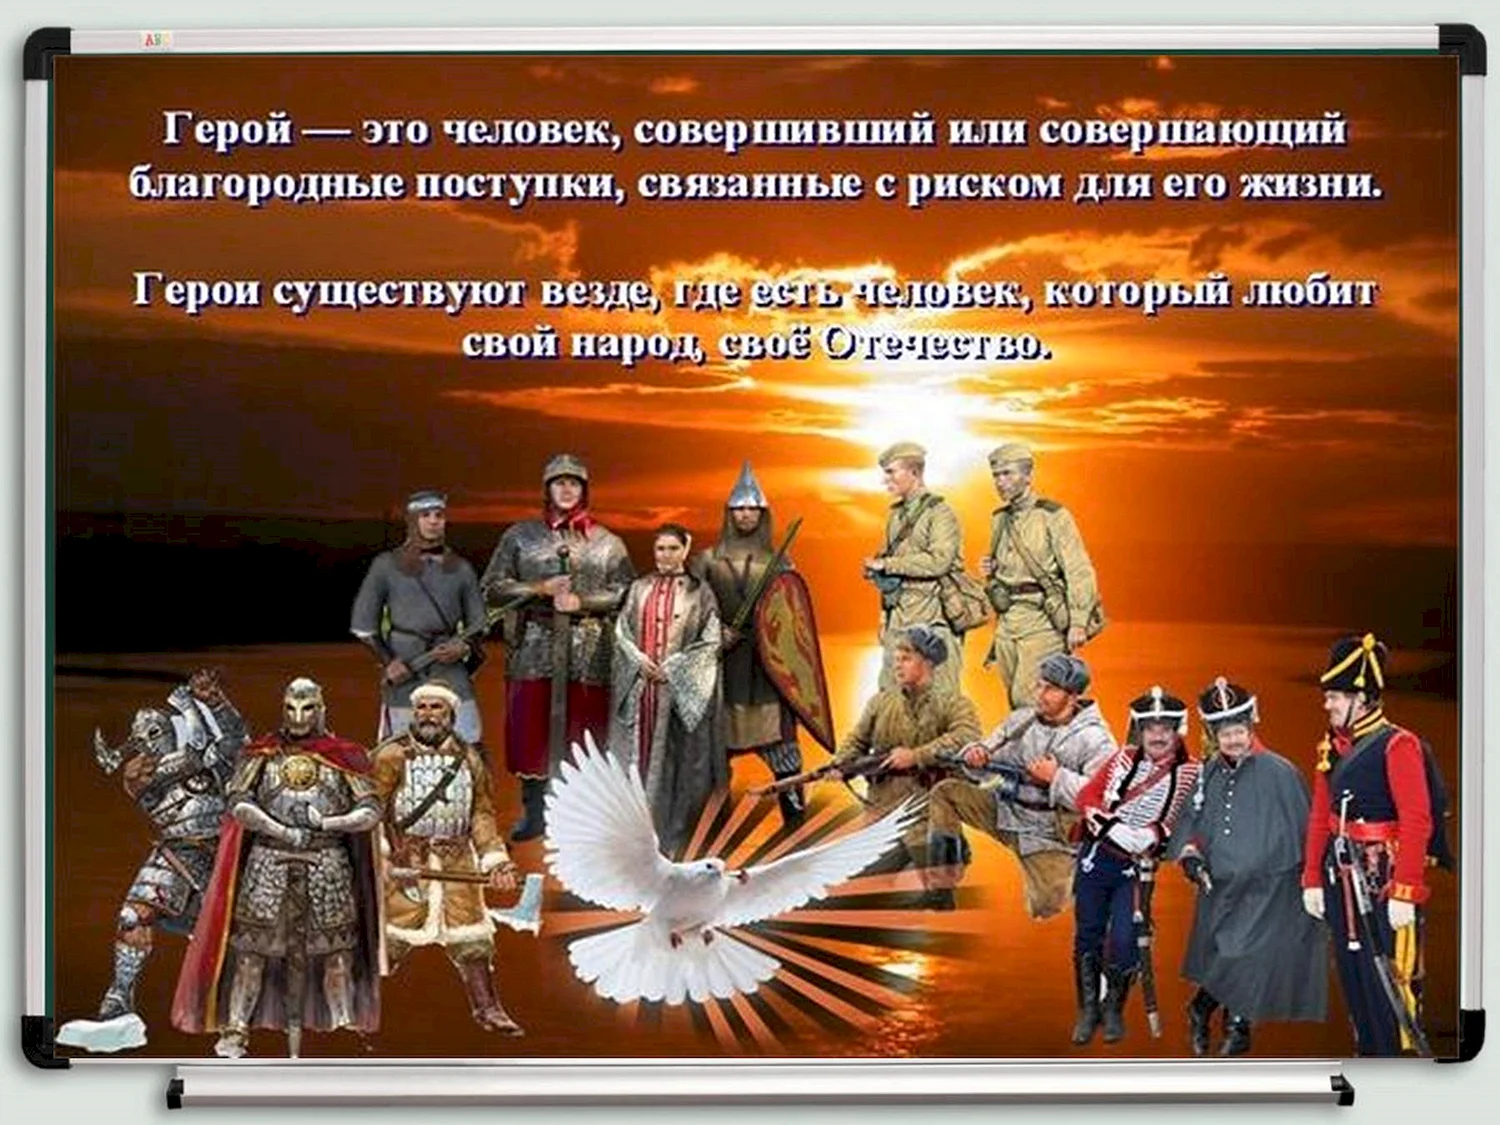 день героев россии 9 декабря